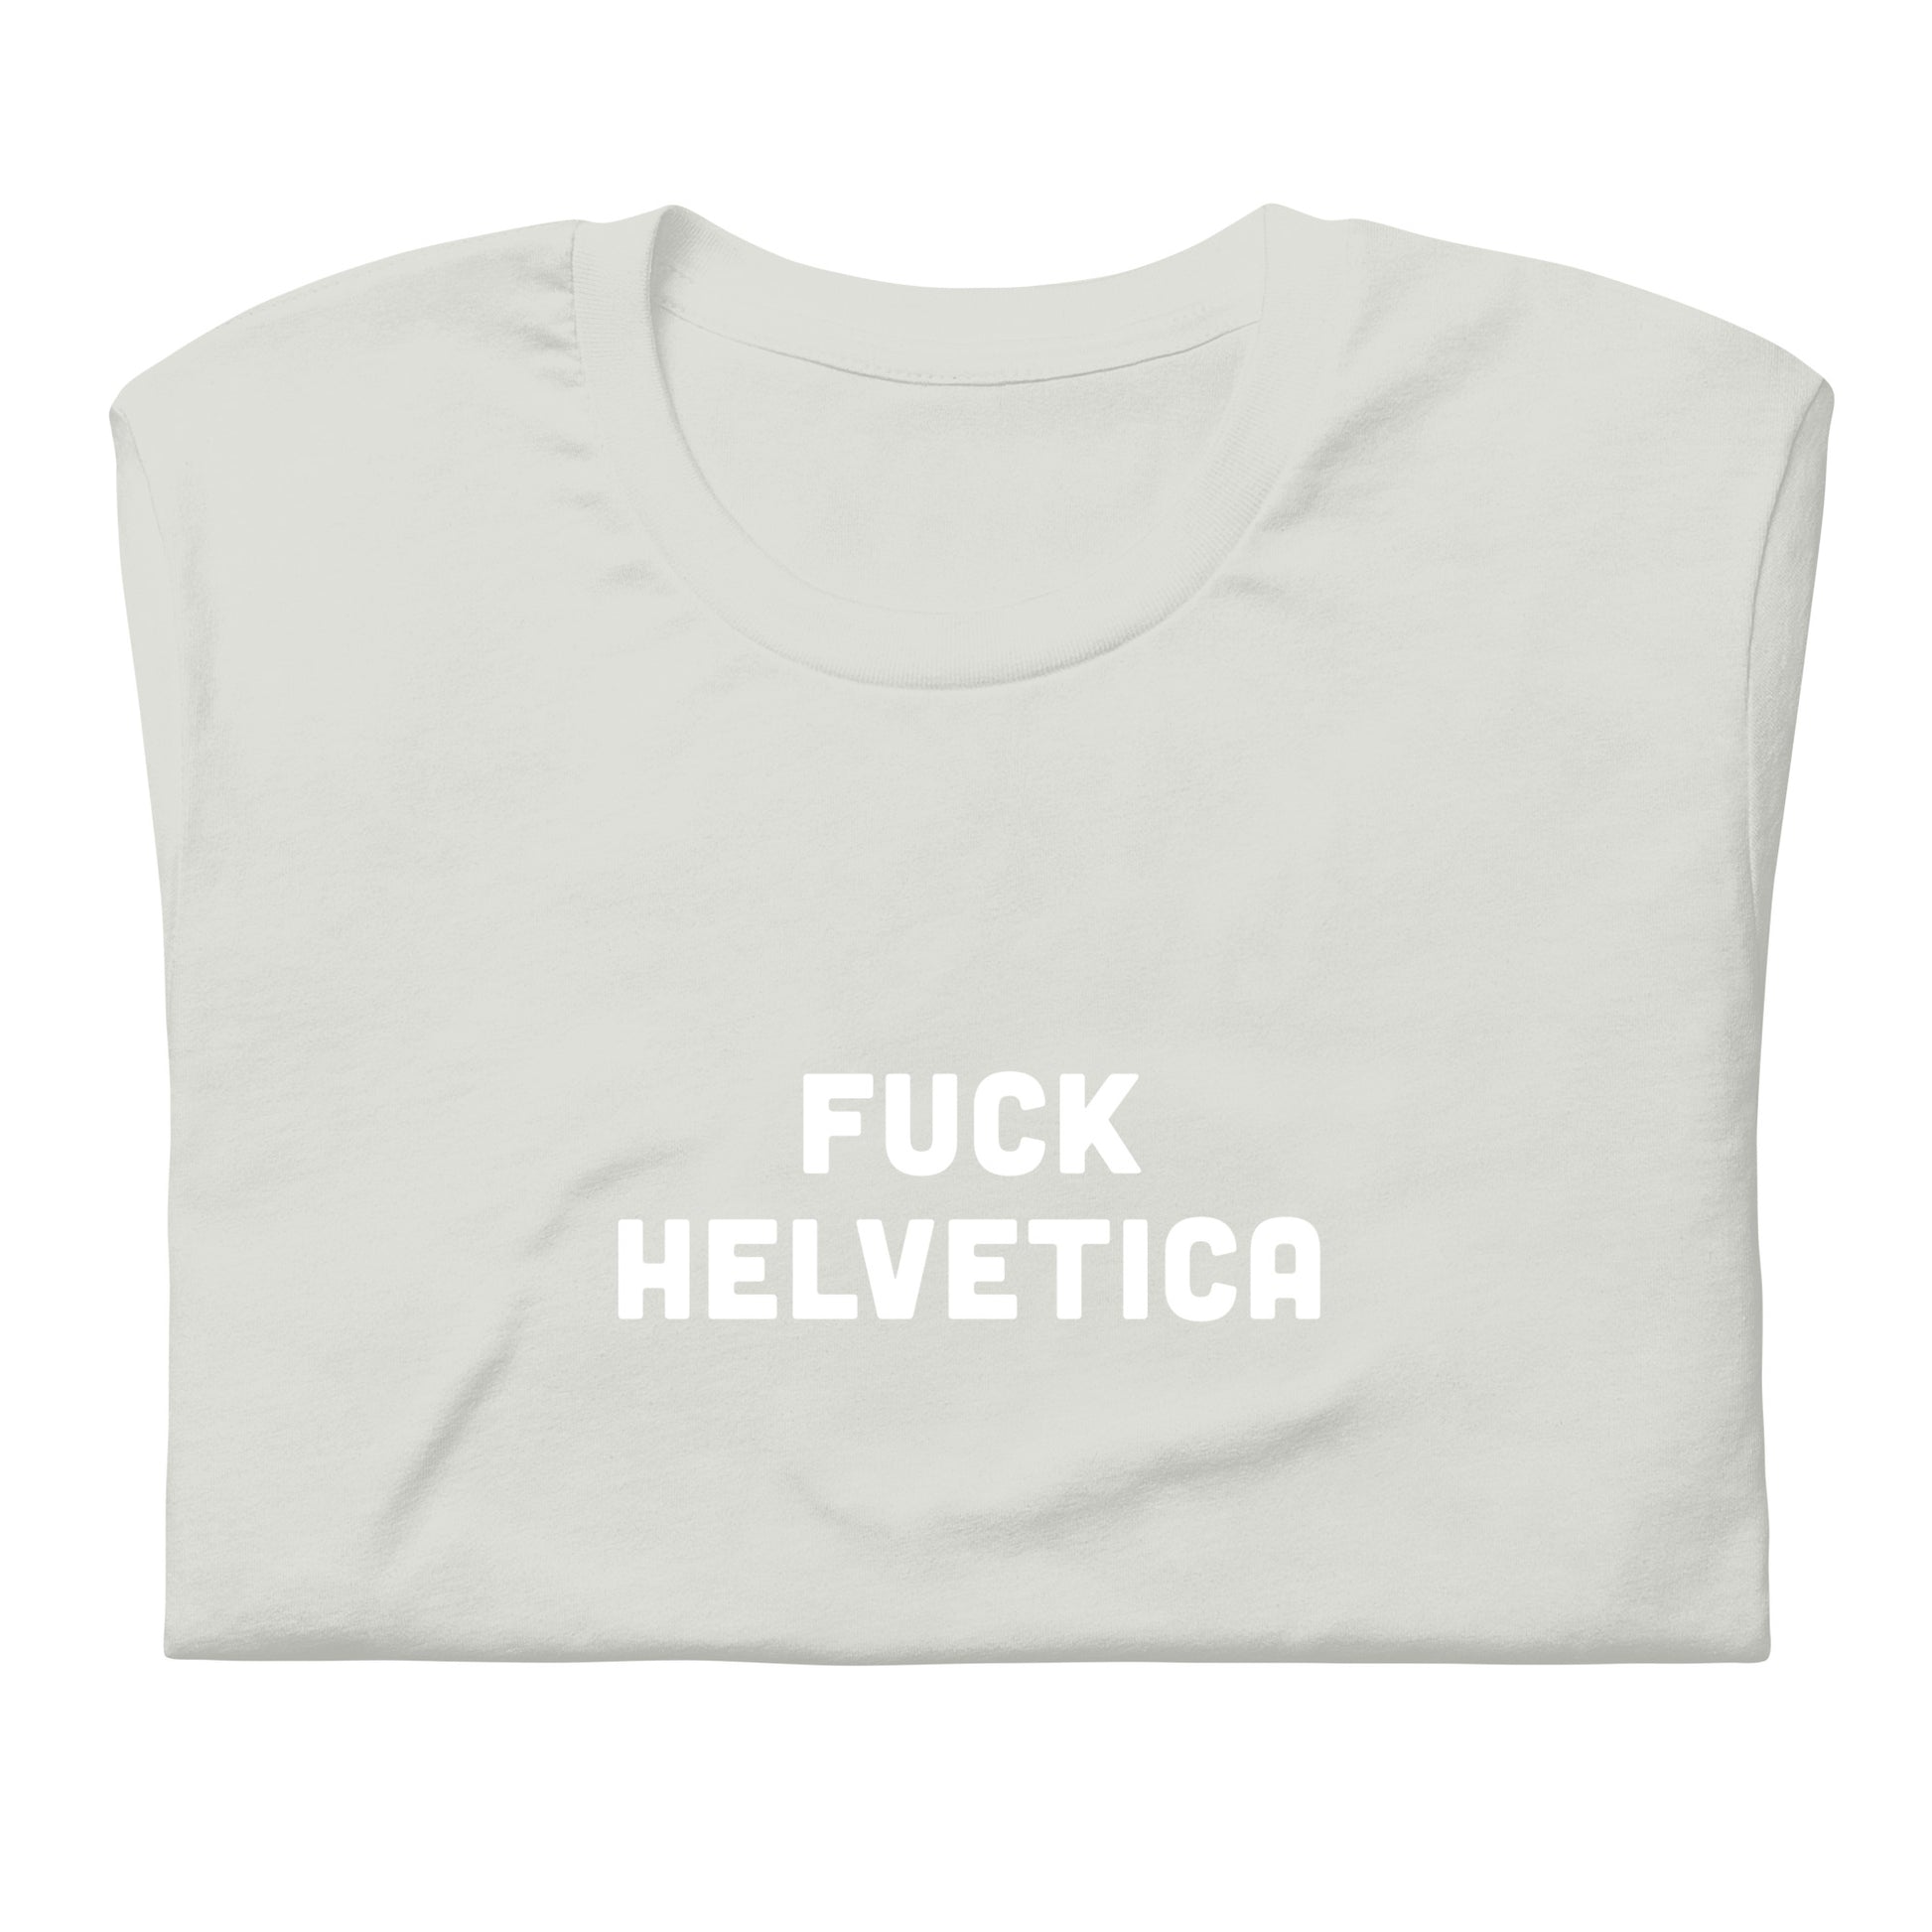 Fuck Helvetica T-Shirt Size 2XL Color Asphalt